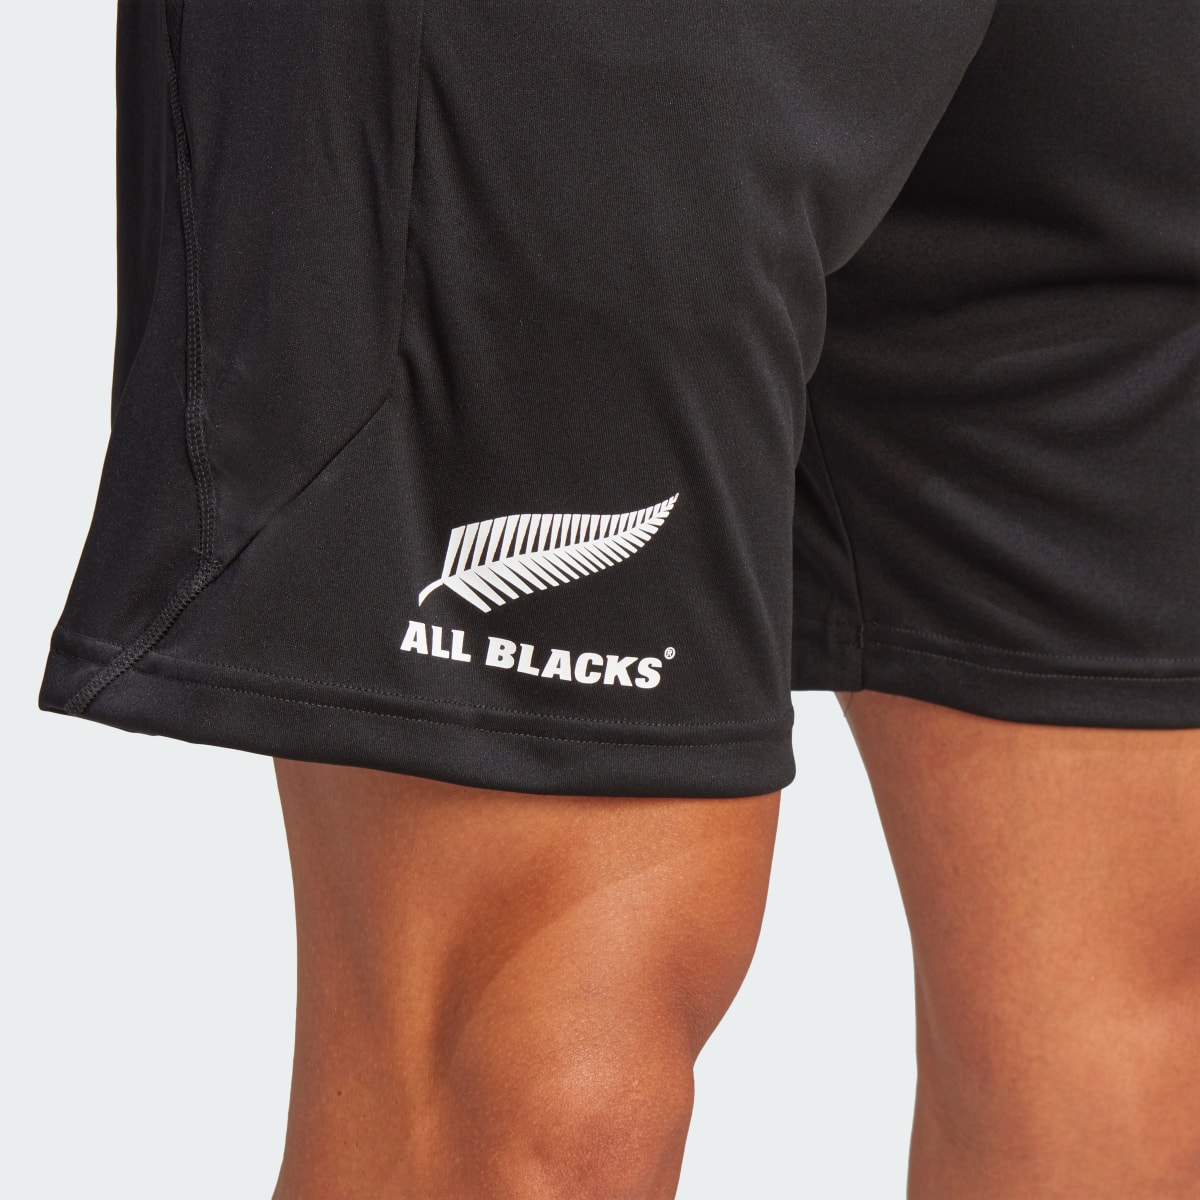 Adidas All Blacks Rugby Gym Shorts. 7